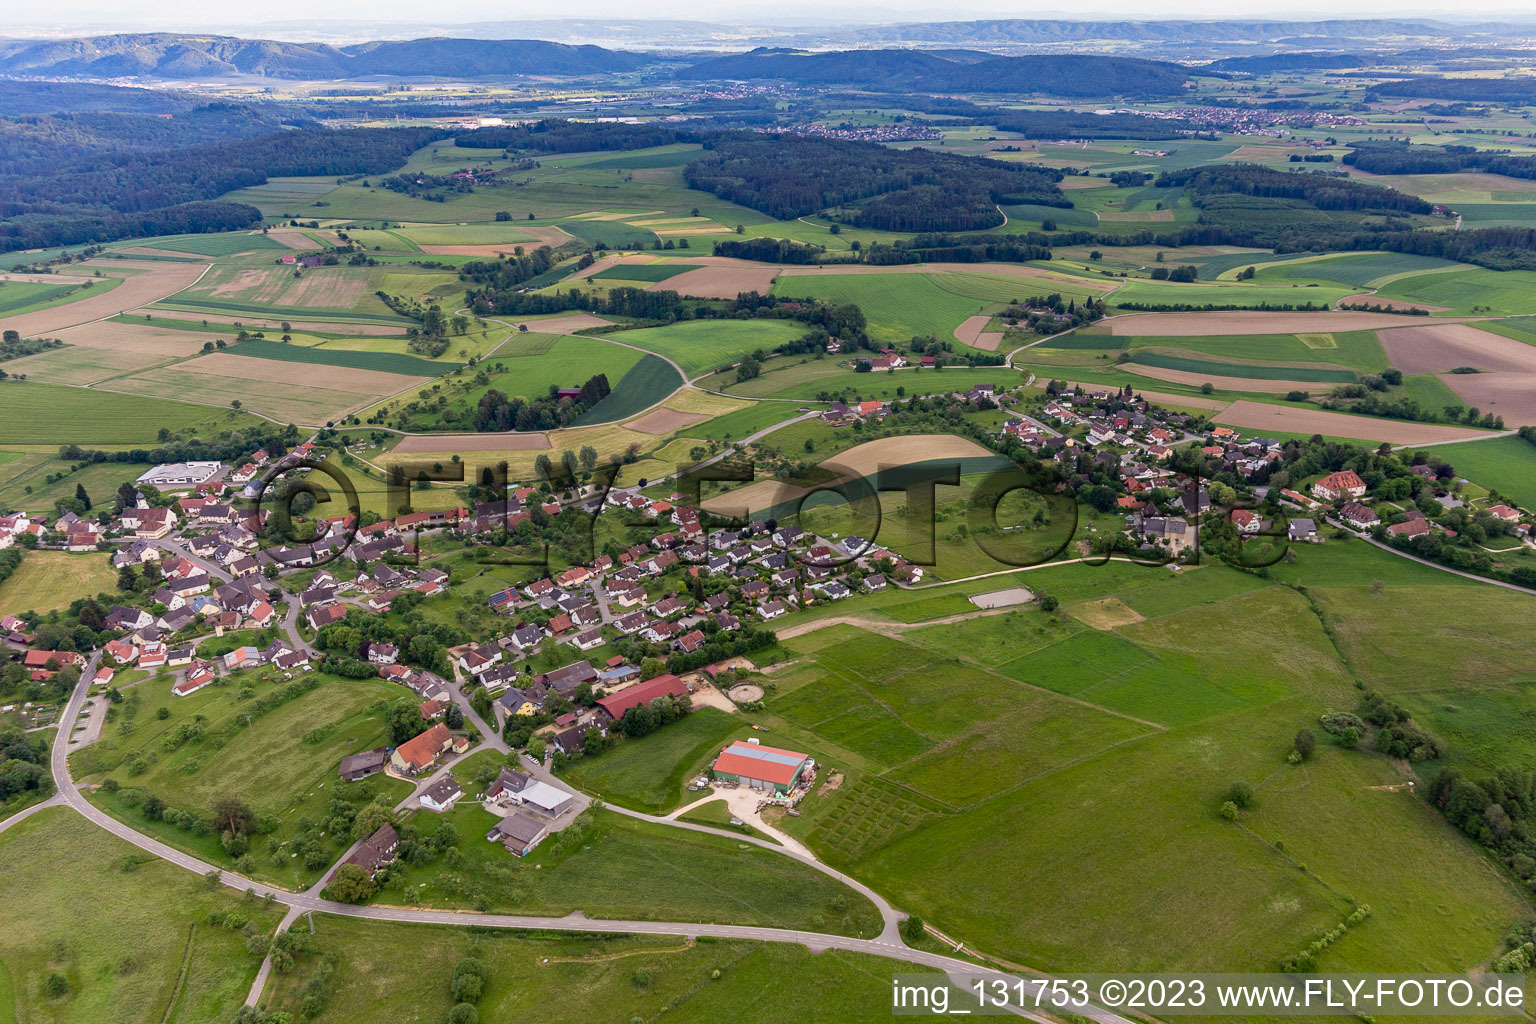 Vue aérienne de Quartier Raithaslach in Stockach dans le département Bade-Wurtemberg, Allemagne